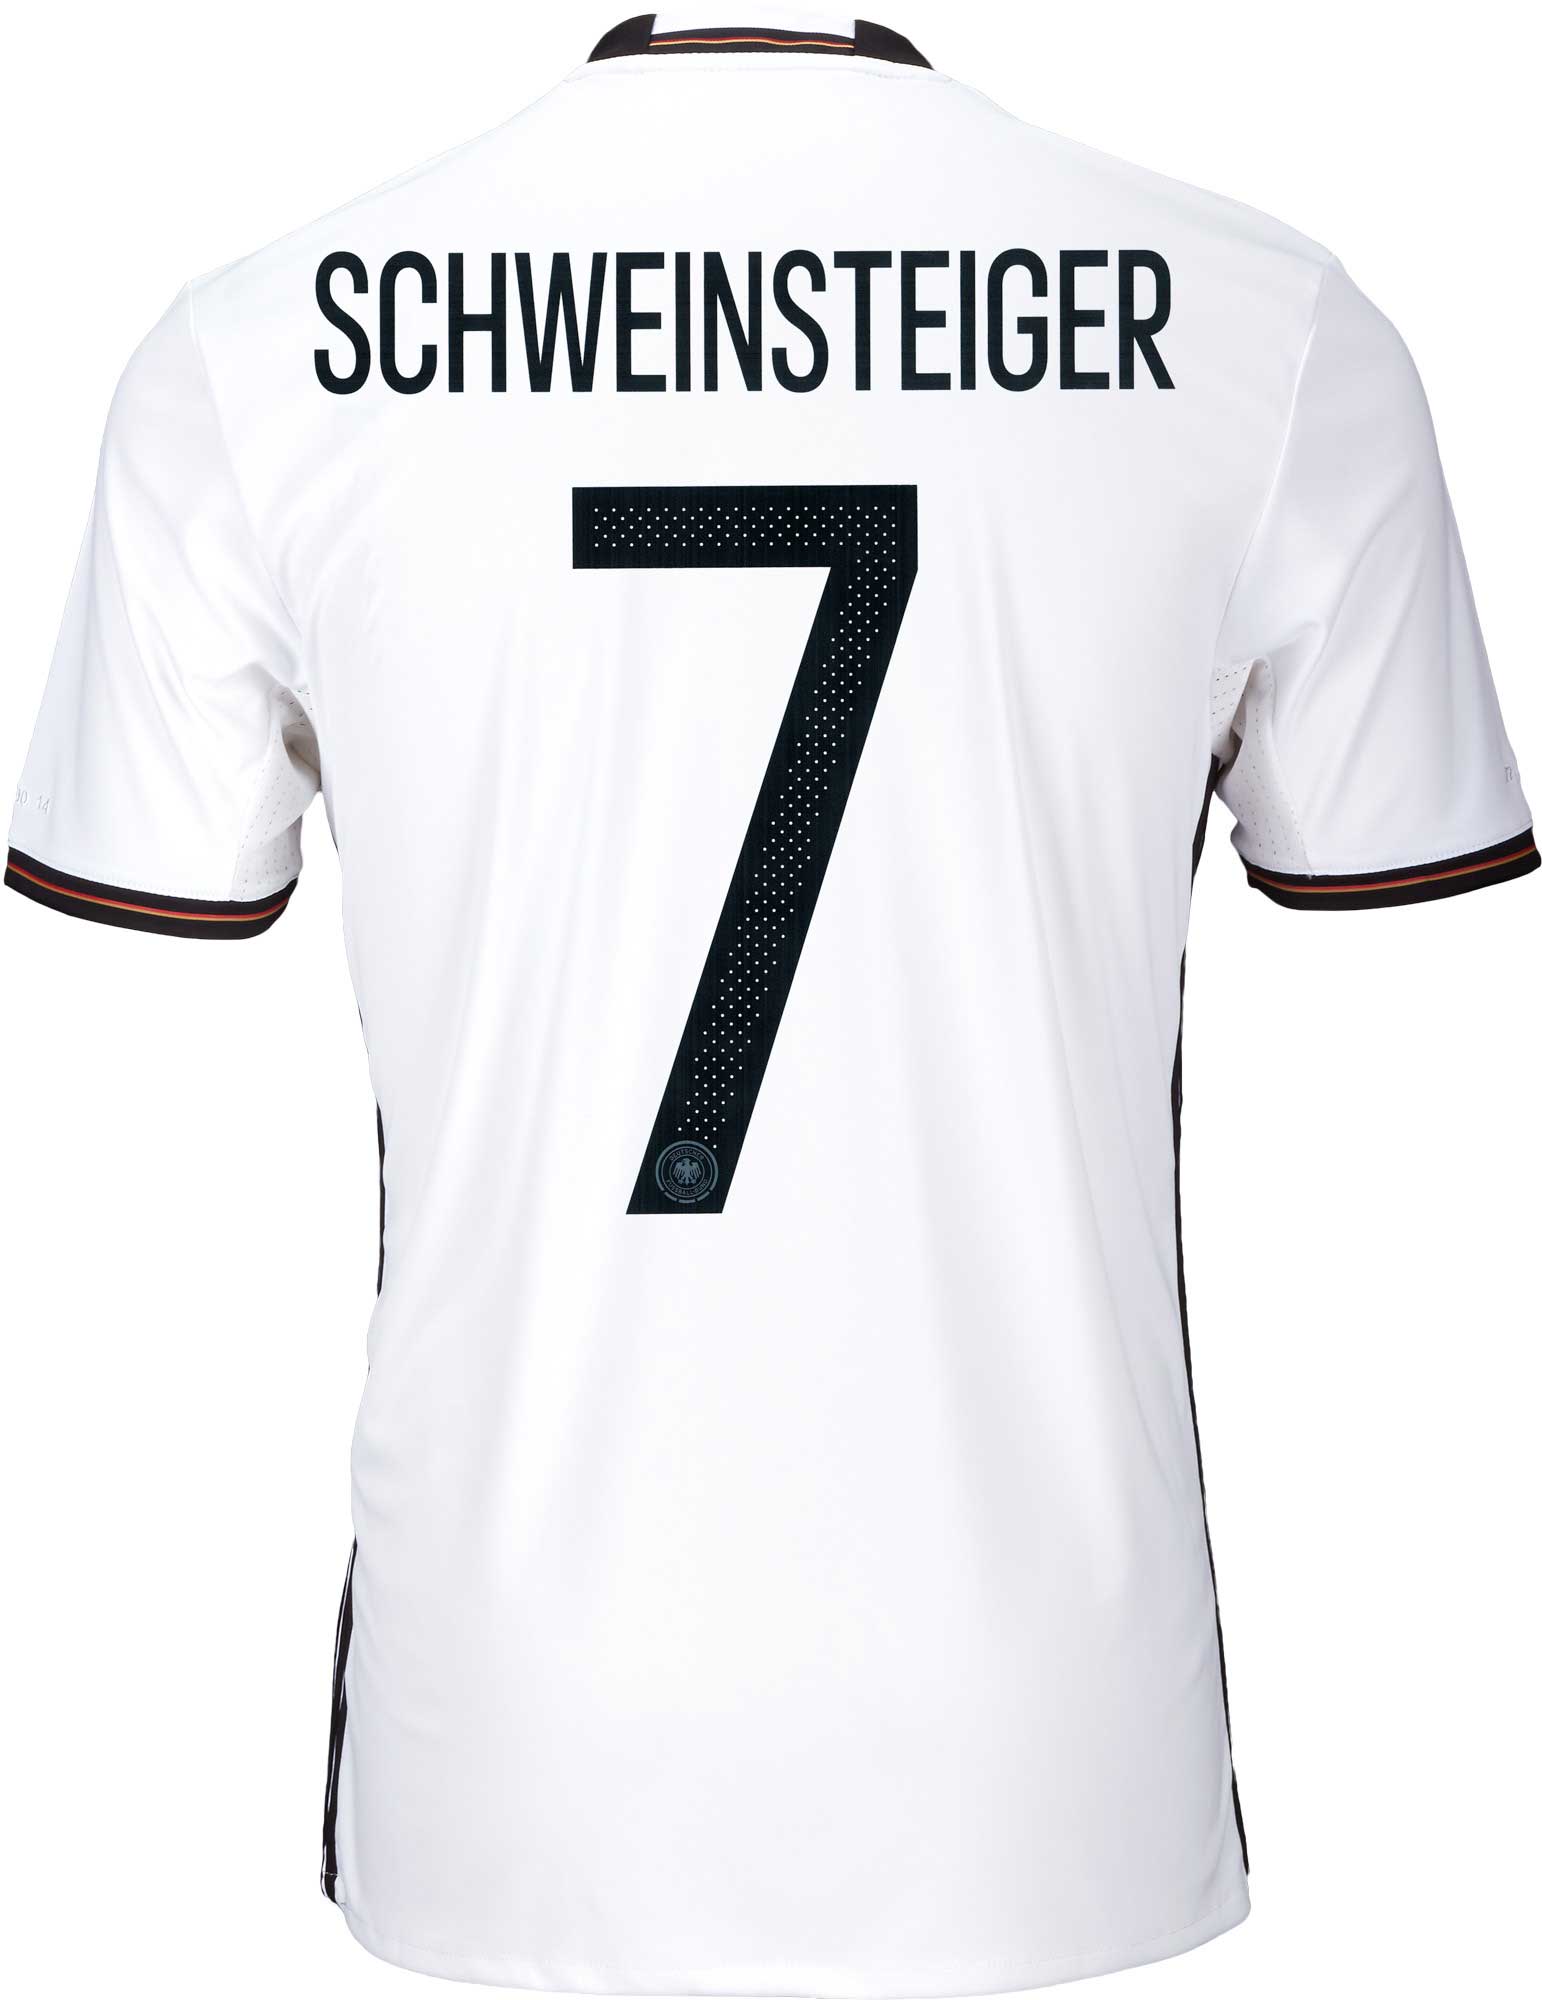 schweinsteiger germany jersey